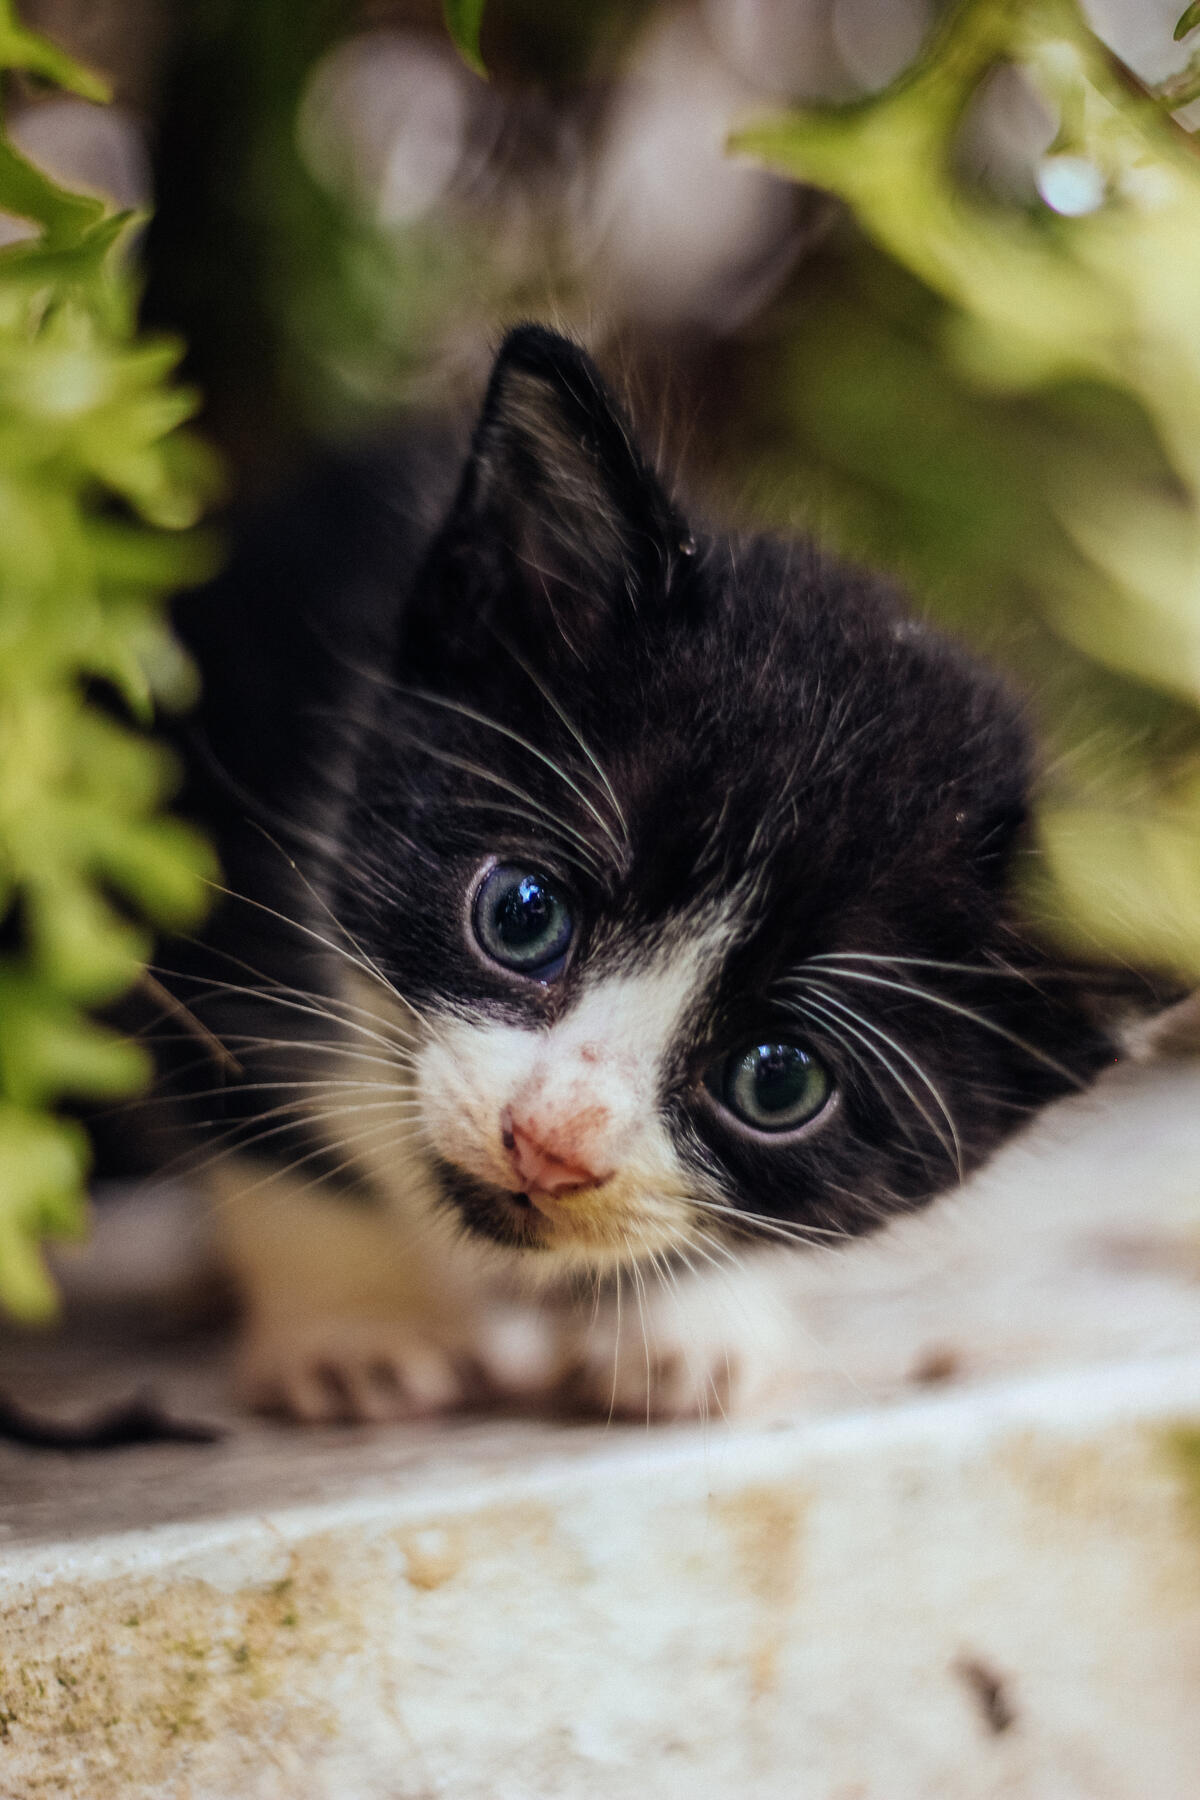 A little spotted kitten